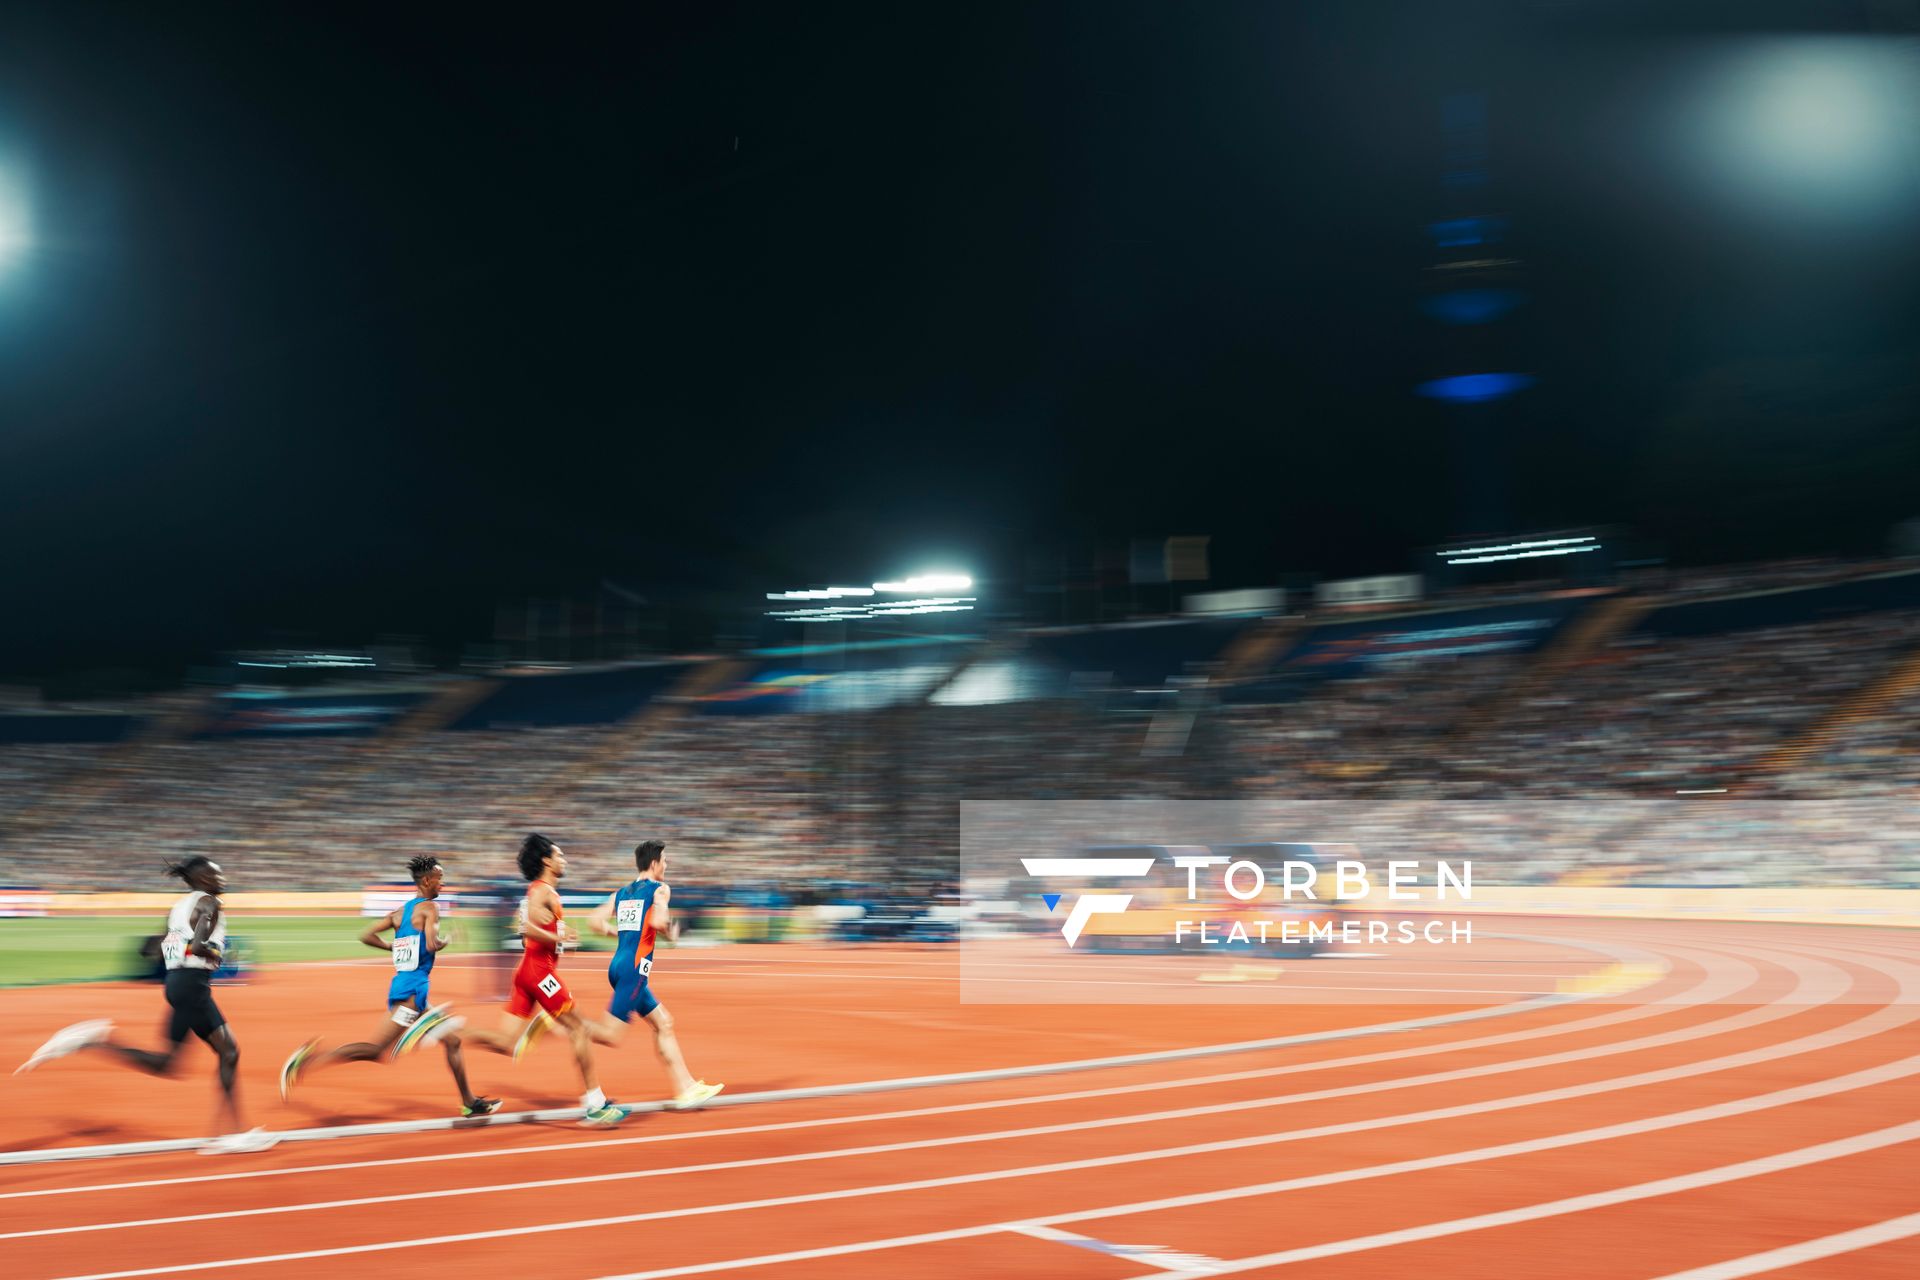 5000m Finale der Maenner mit Jakob Ingebrigtsen (NOR), Mohamed Katir (ESP), Yemaneberhan Crippa (ITA) und Isaac Kimeli (BEL) am 16.08.2022 bei den Leichtathletik-Europameisterschaften in Muenchen